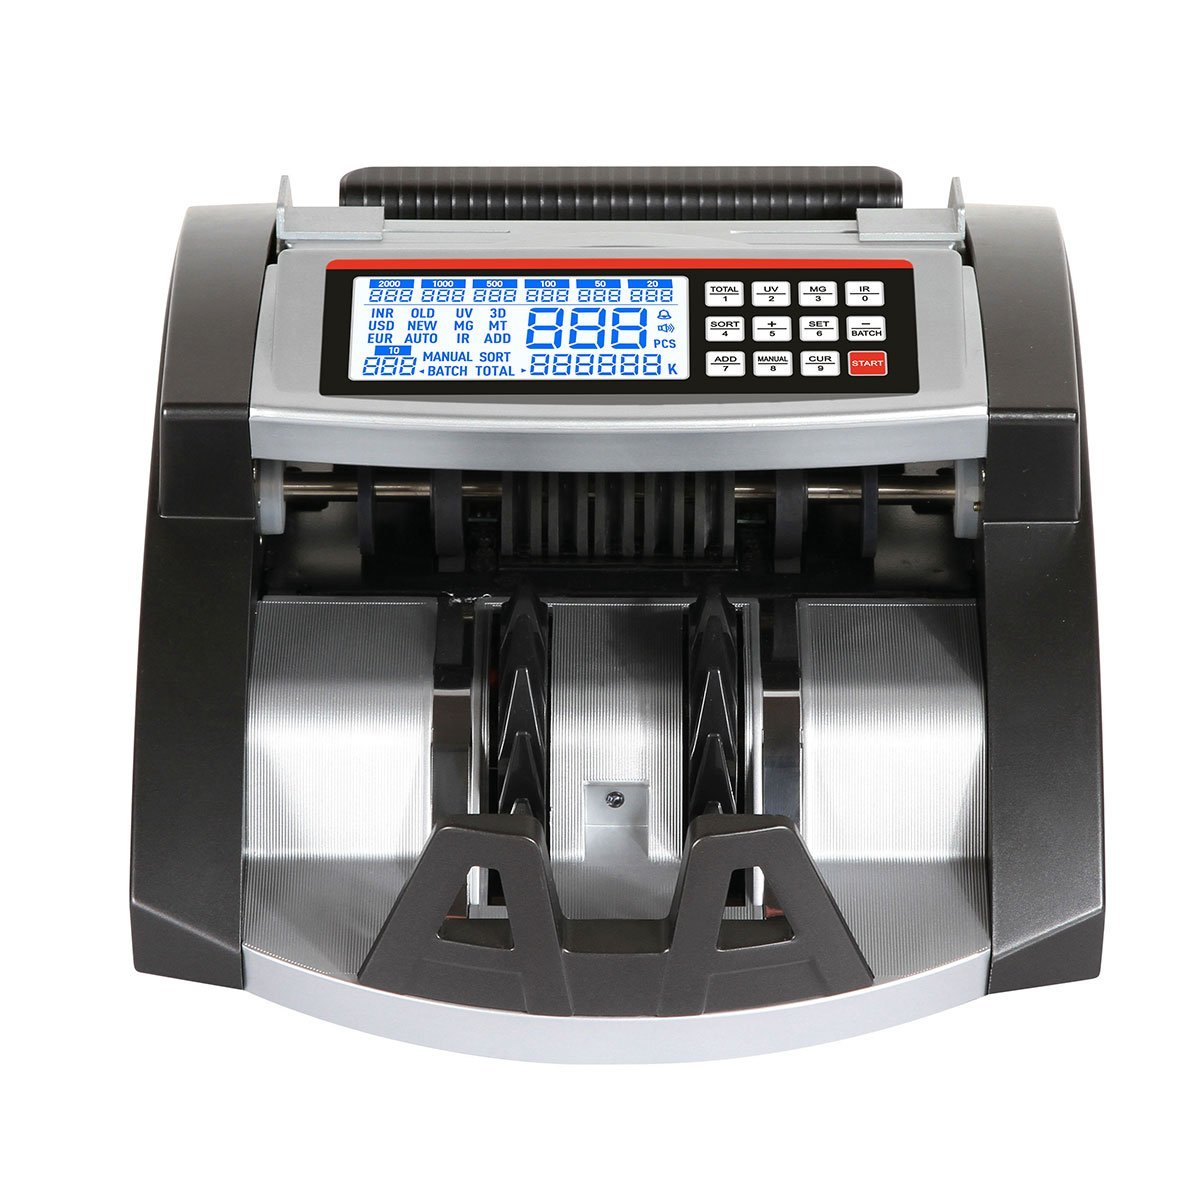 ماكينة عد النقود الأوتوماتيكية من كروني AL-6000، أدوات التحقق من الأوراق النقدية